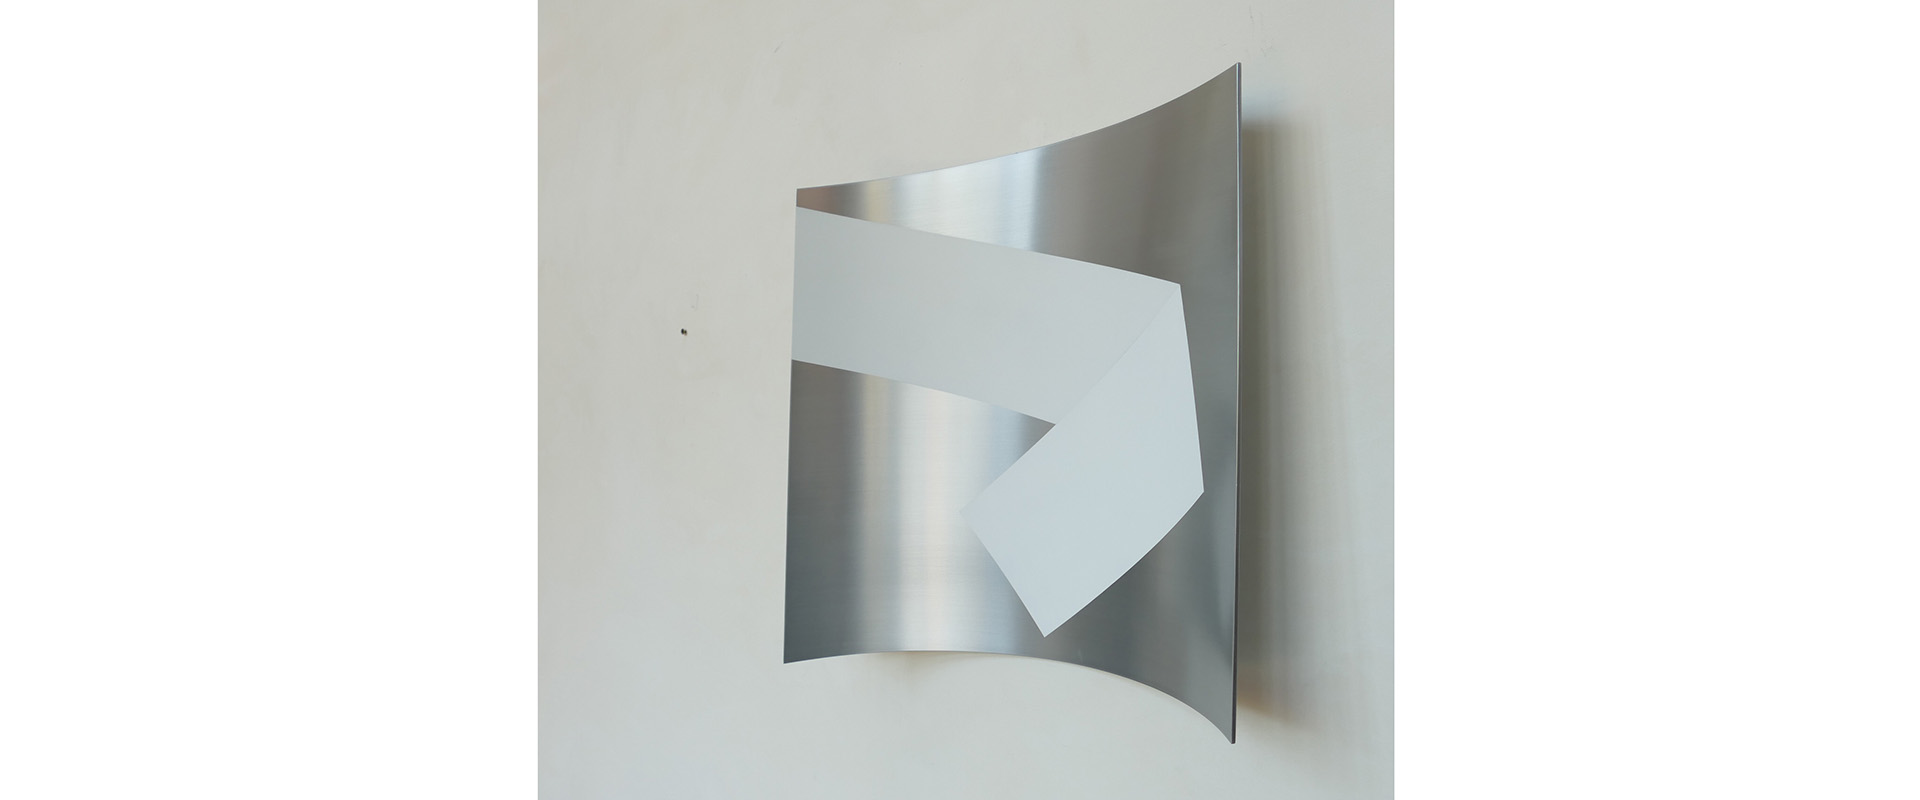 Raumzeichen - 2020, Lack auf Aluminium, 36 x 37 x 8 cm